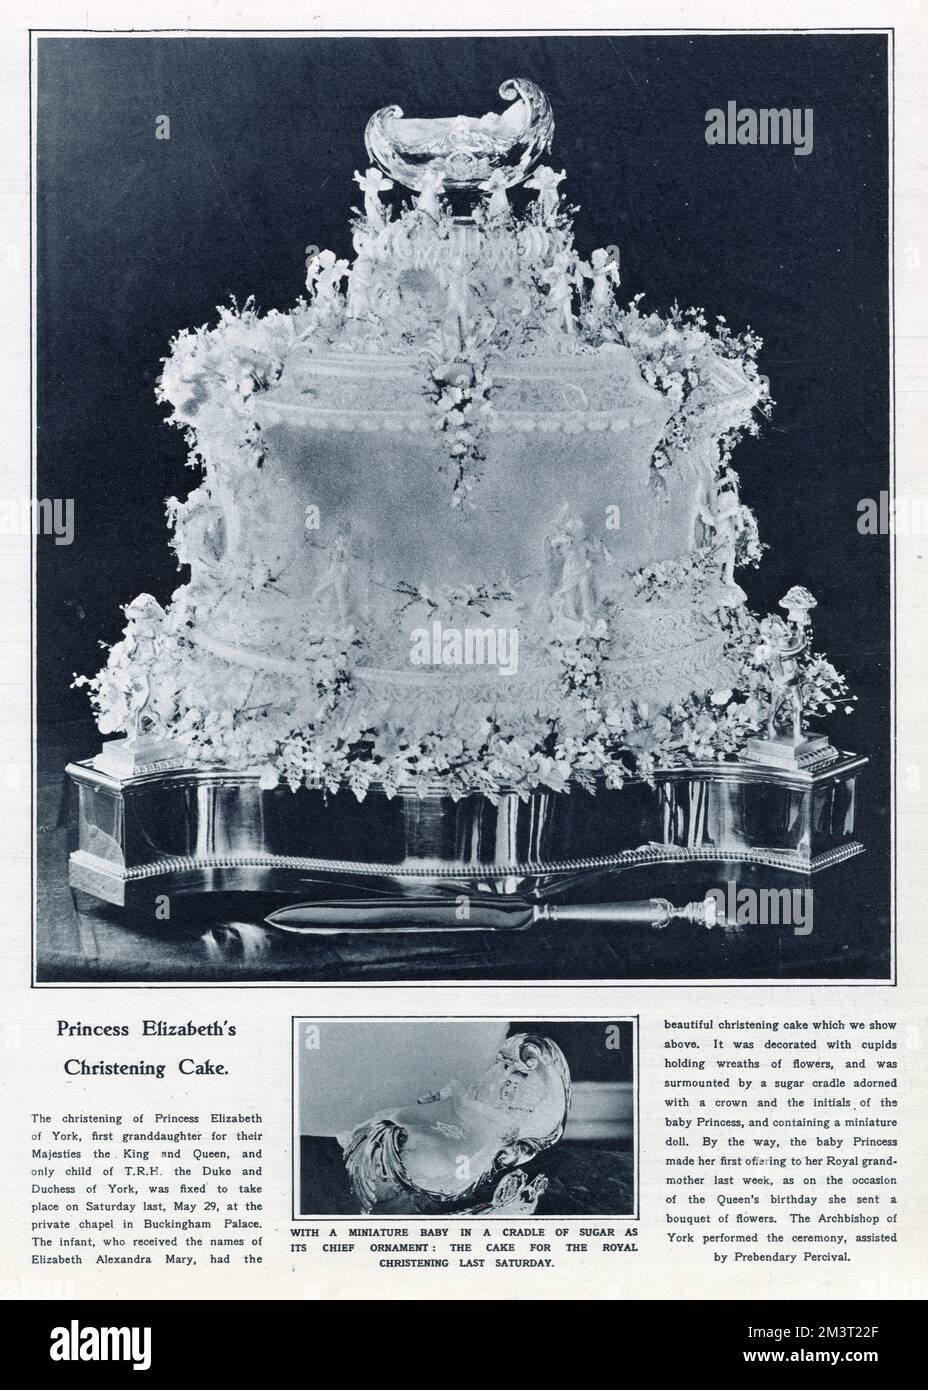 Torta per il battesimo della principessa Elisabetta (successivamente regina Elisabetta II) nel maggio 1926. Era decorata con cupidi che tenevano corone di fiori, ed era sormontata da una culla di zucchero adornata con una corona e le iniziali della principessa del bambino e contenente una bambola in miniatura. Foto Stock